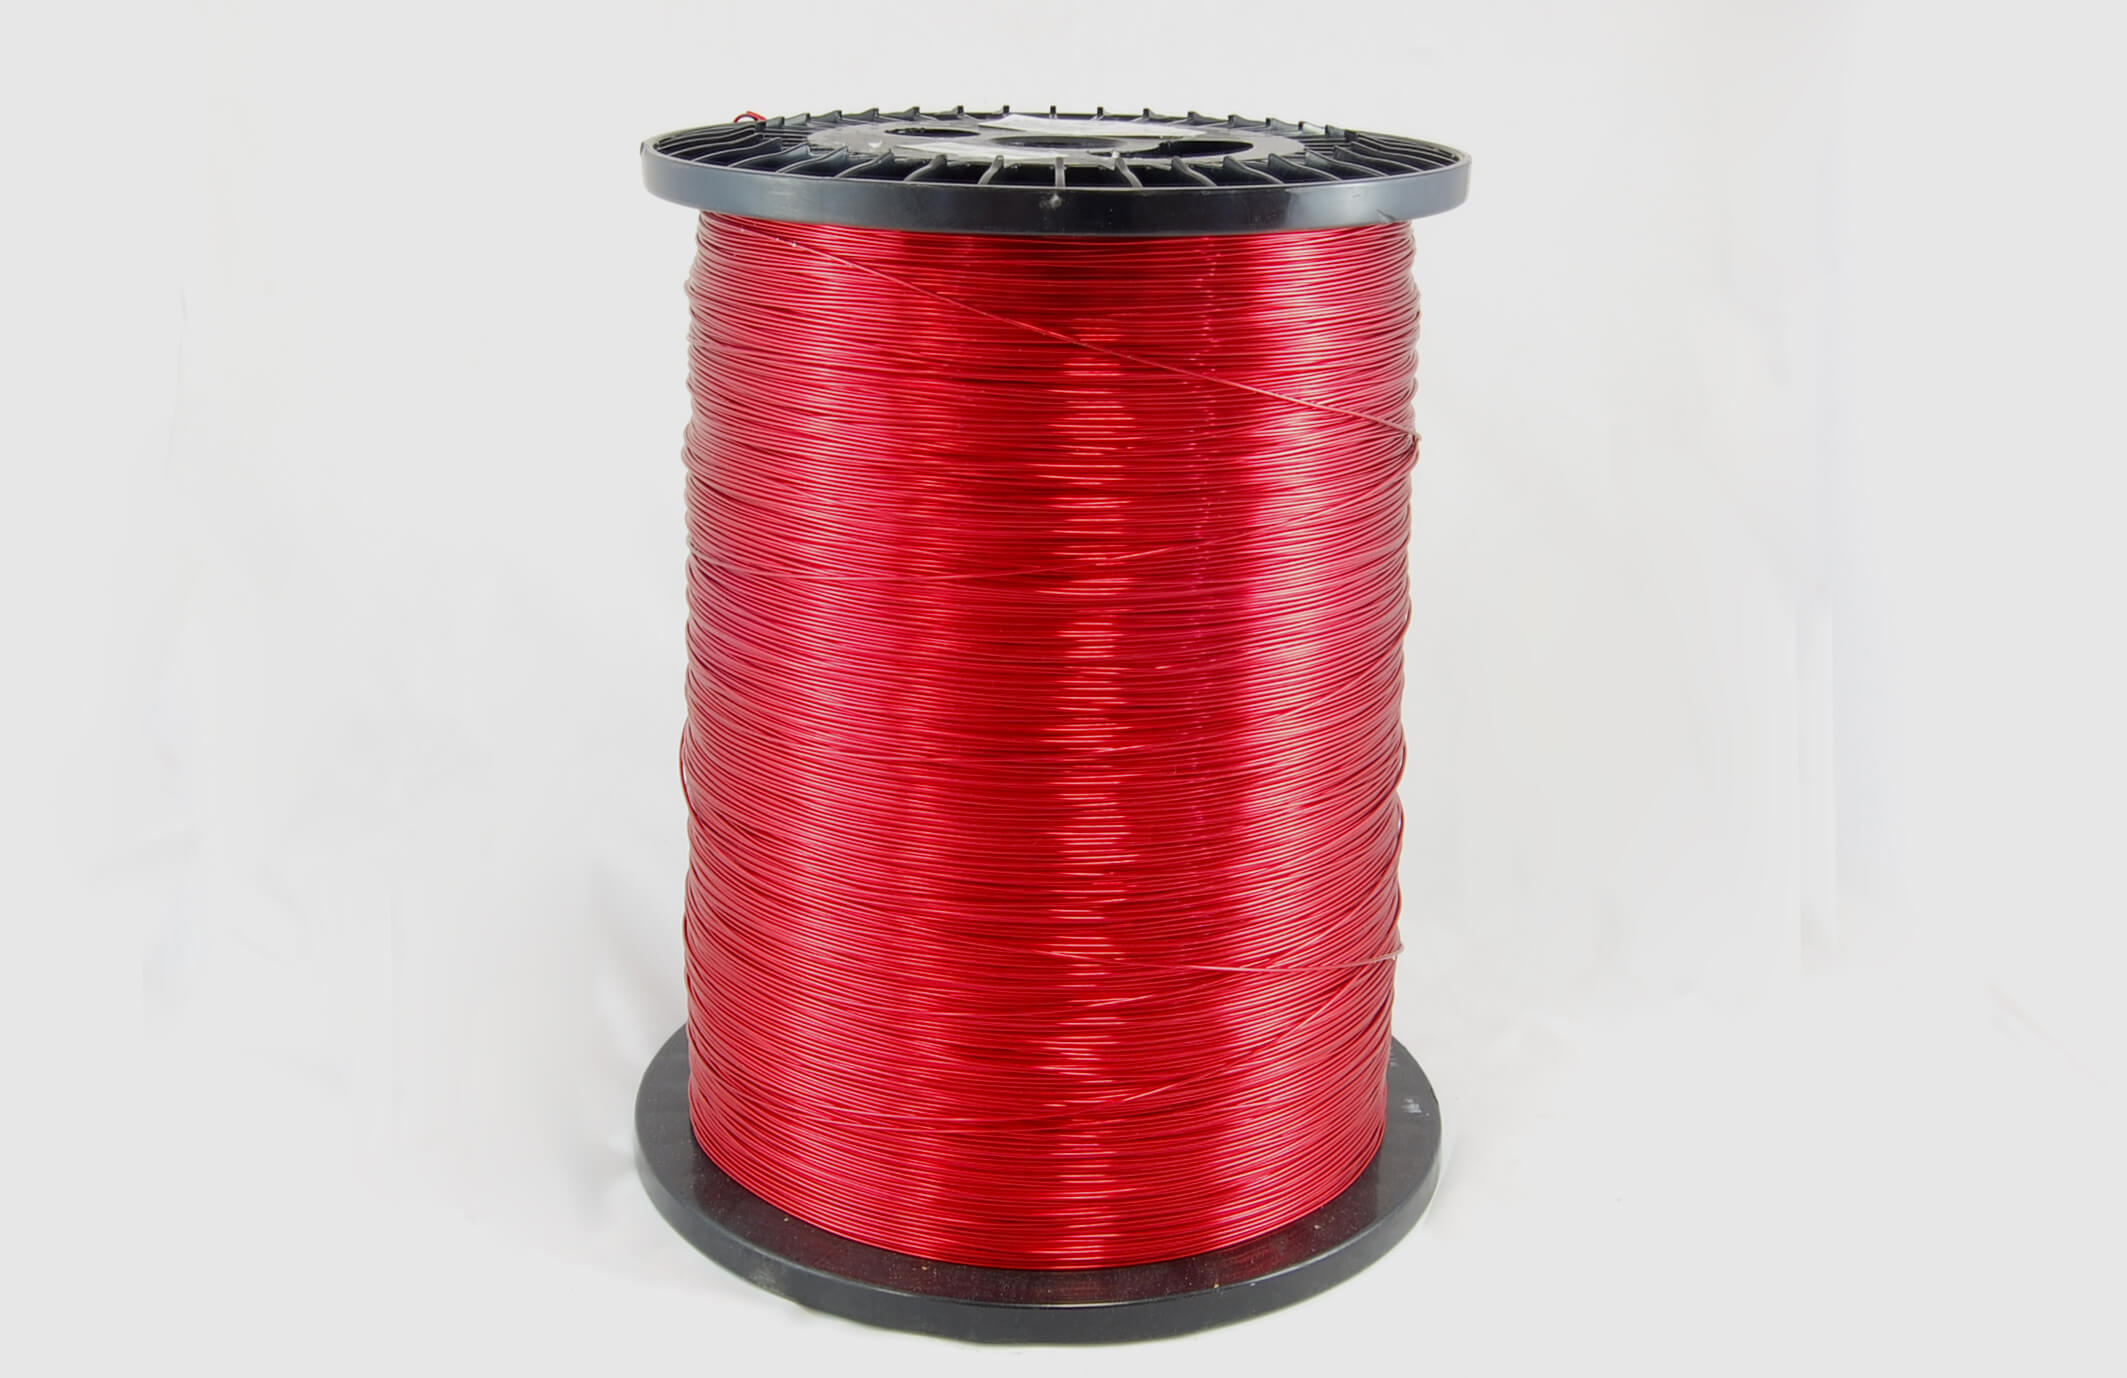 #30 Heavy Nysol  Round HNSR MW 80 Copper Magnet Wire 155°C, red, 85 LB box (average wght.)